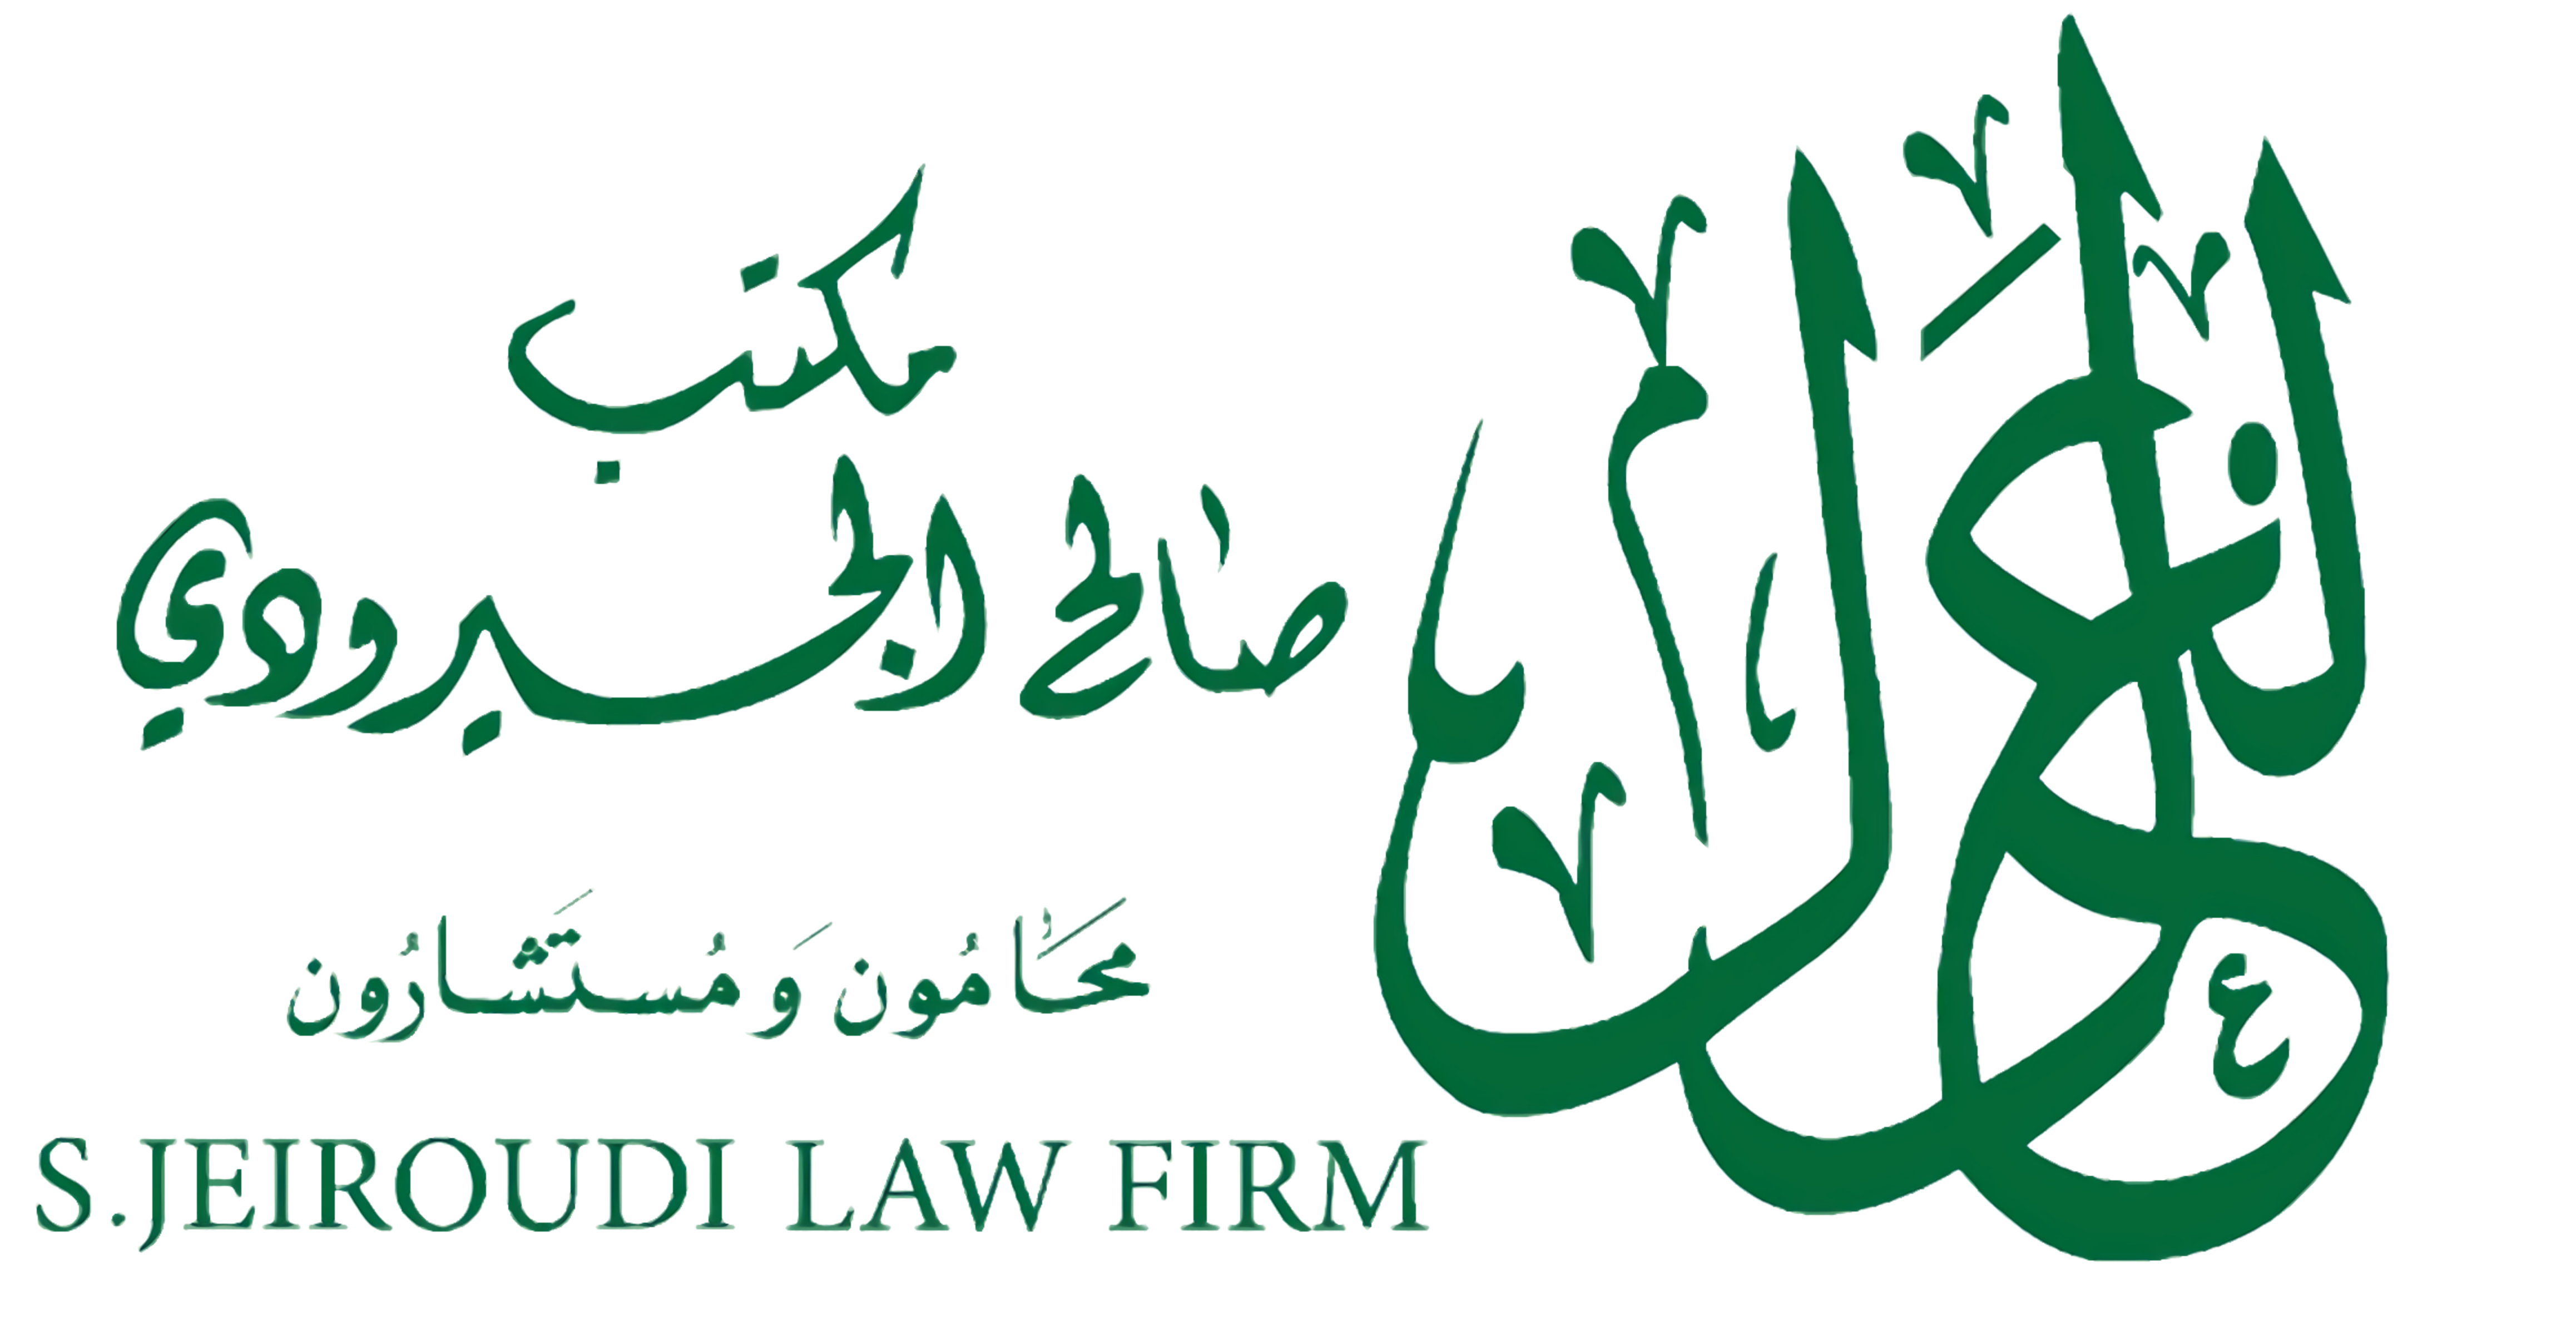 S. Jeiorudi Law Firm